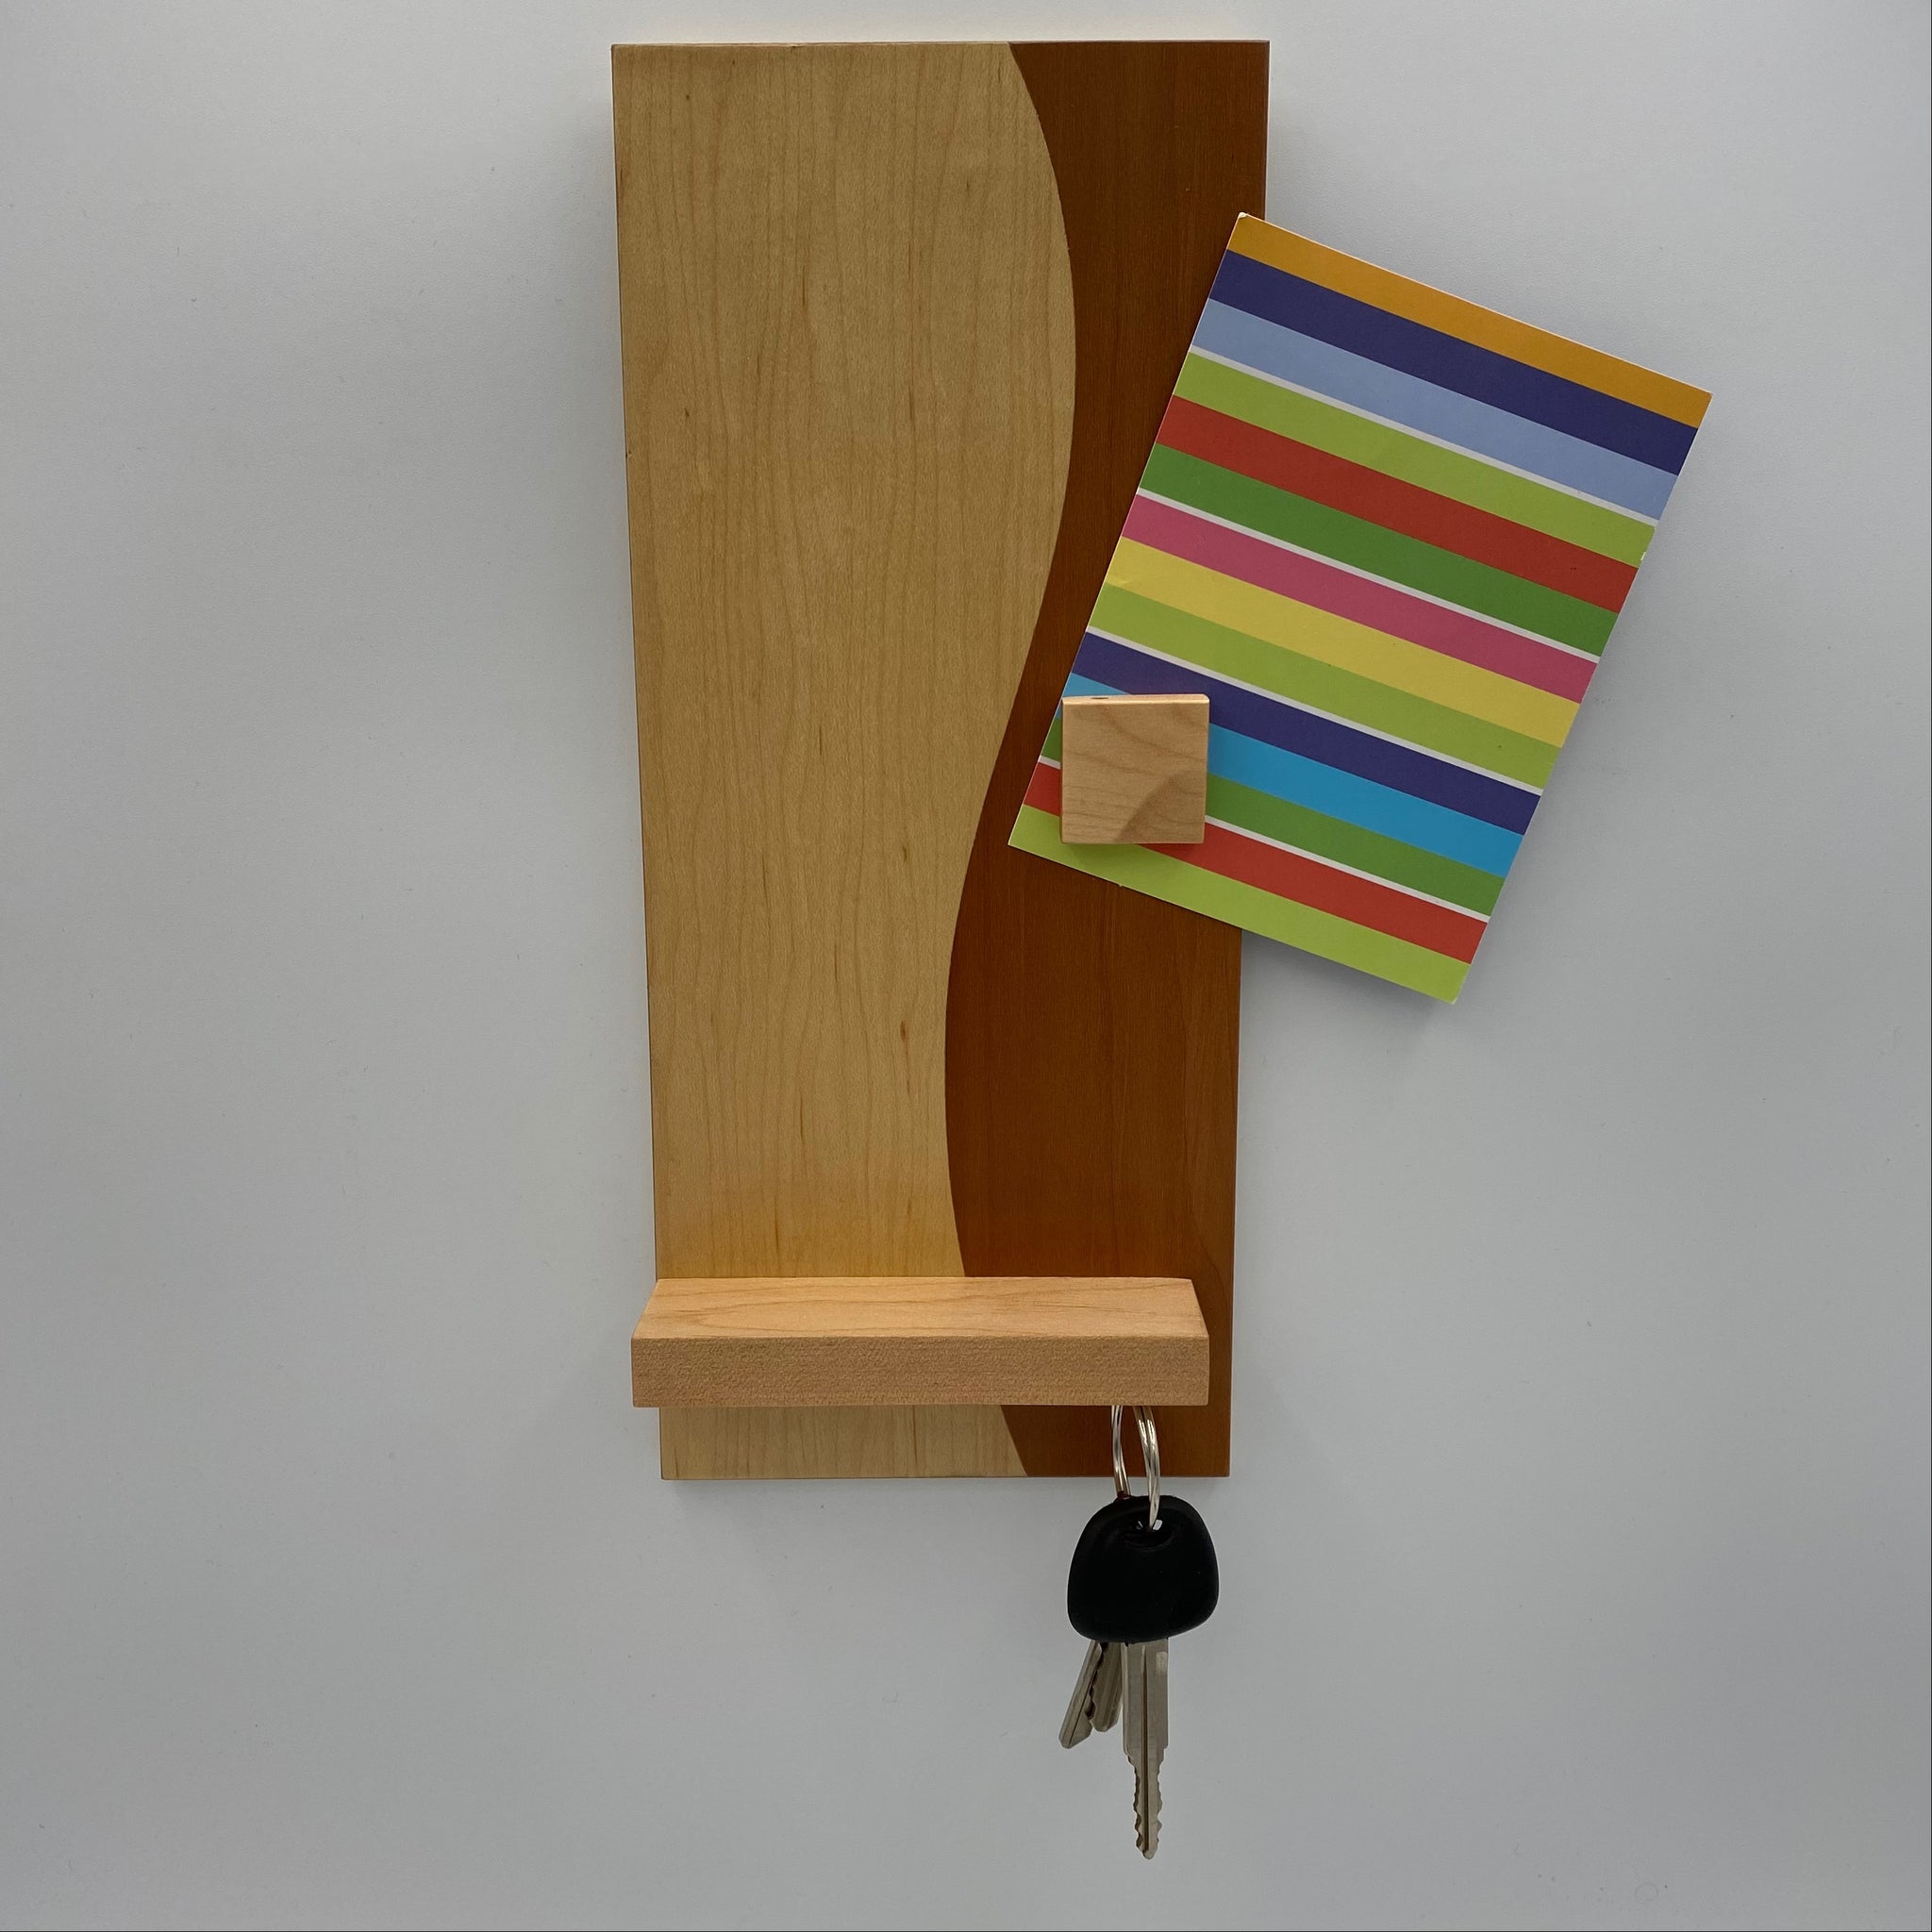 Tableau magnétique Pablo pour clés, notes, photos et autres – Charles  Valcourt